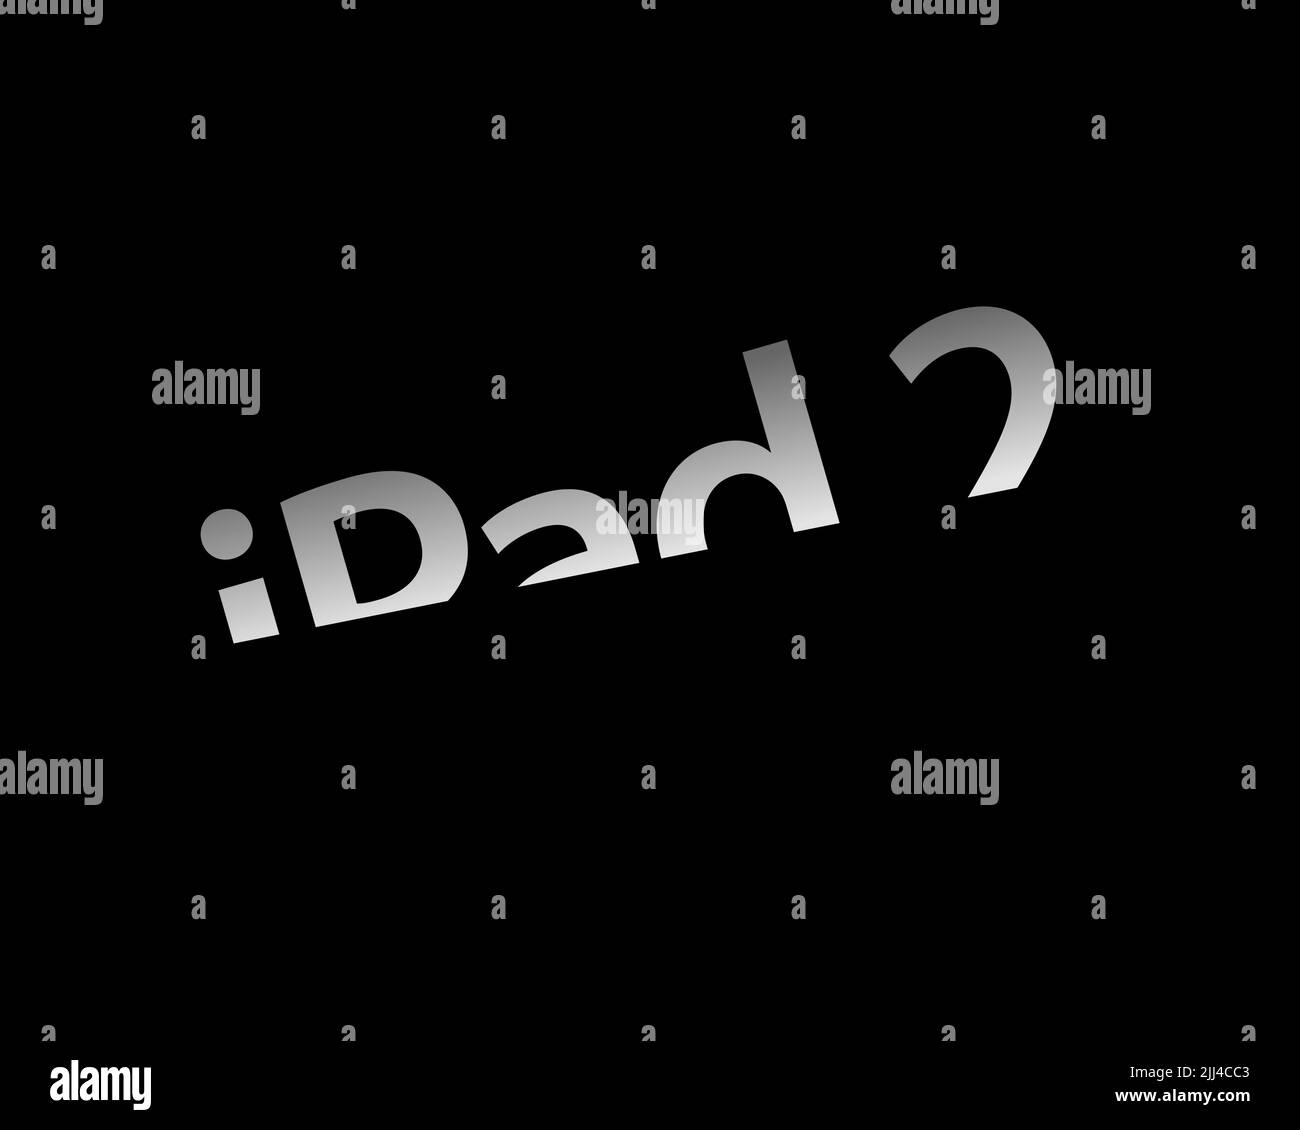 IPad 2, rotated logo, black background Stock Photo